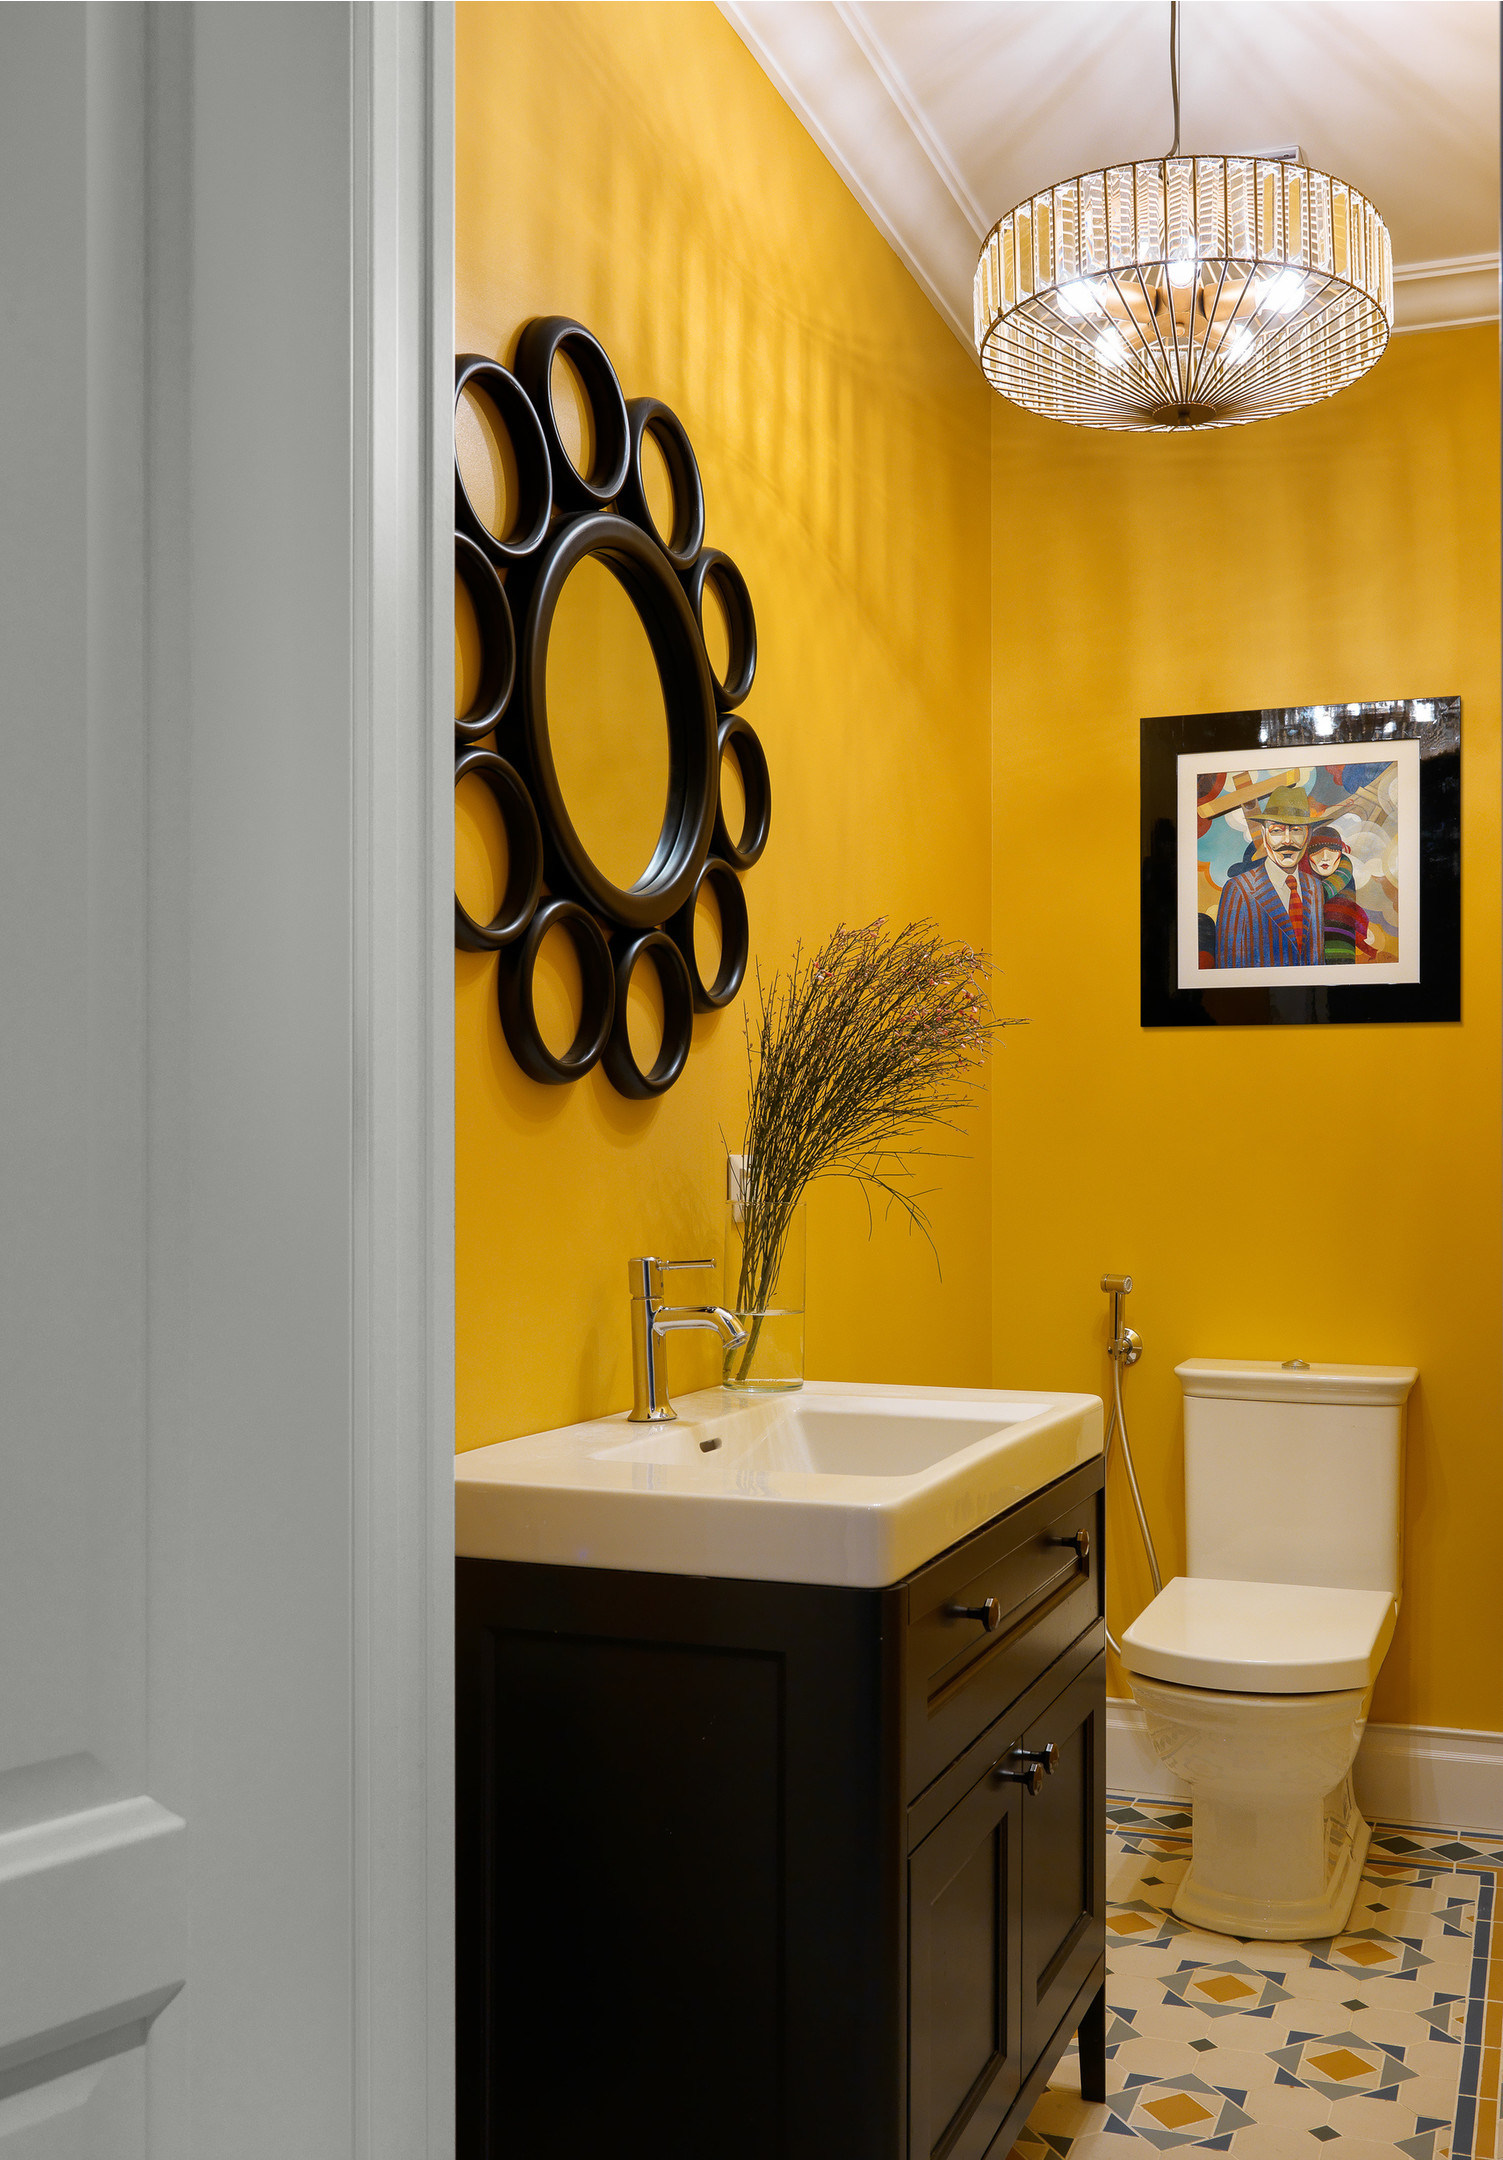 Dự án của NTK Marina Braginskaya mang đến cho phòng tắm vẻ đẹp như một gallery nghệ thuật. Từ gương treo tường, tranh ảnh,...  đến chiếc đèn chùm pha lê tinh xảo, phản chiếu ánh sáng tuyệt đẹp trên phông nền màu vàng vừa rực rỡ vừa ấm cúng.